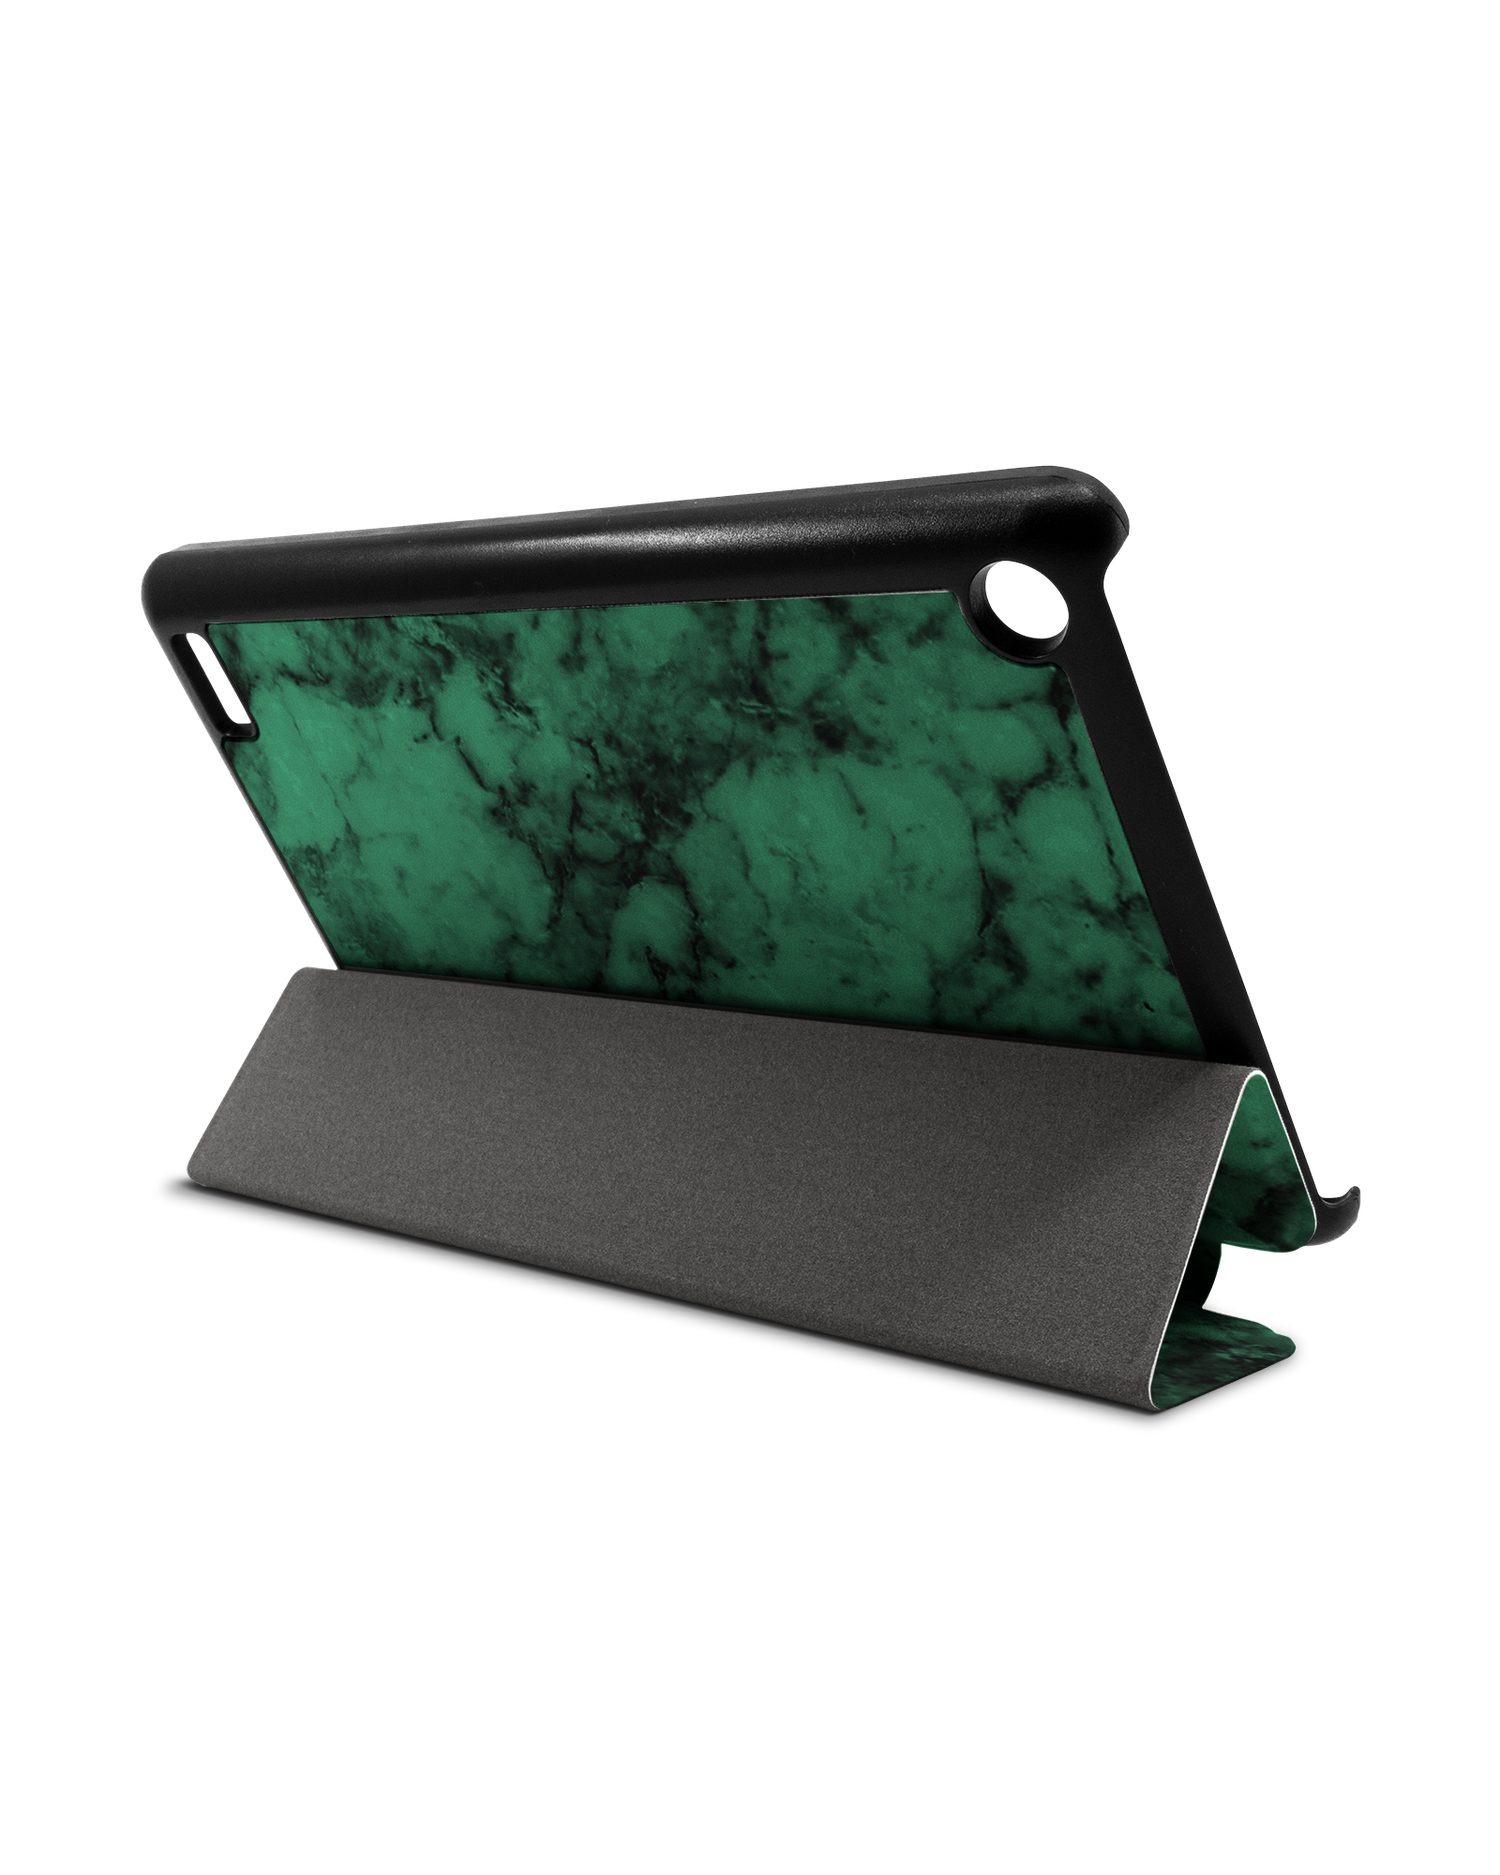 Green Marble Tablet Smart Case für Amazon Fire 7: Aufgestellt im Querformat